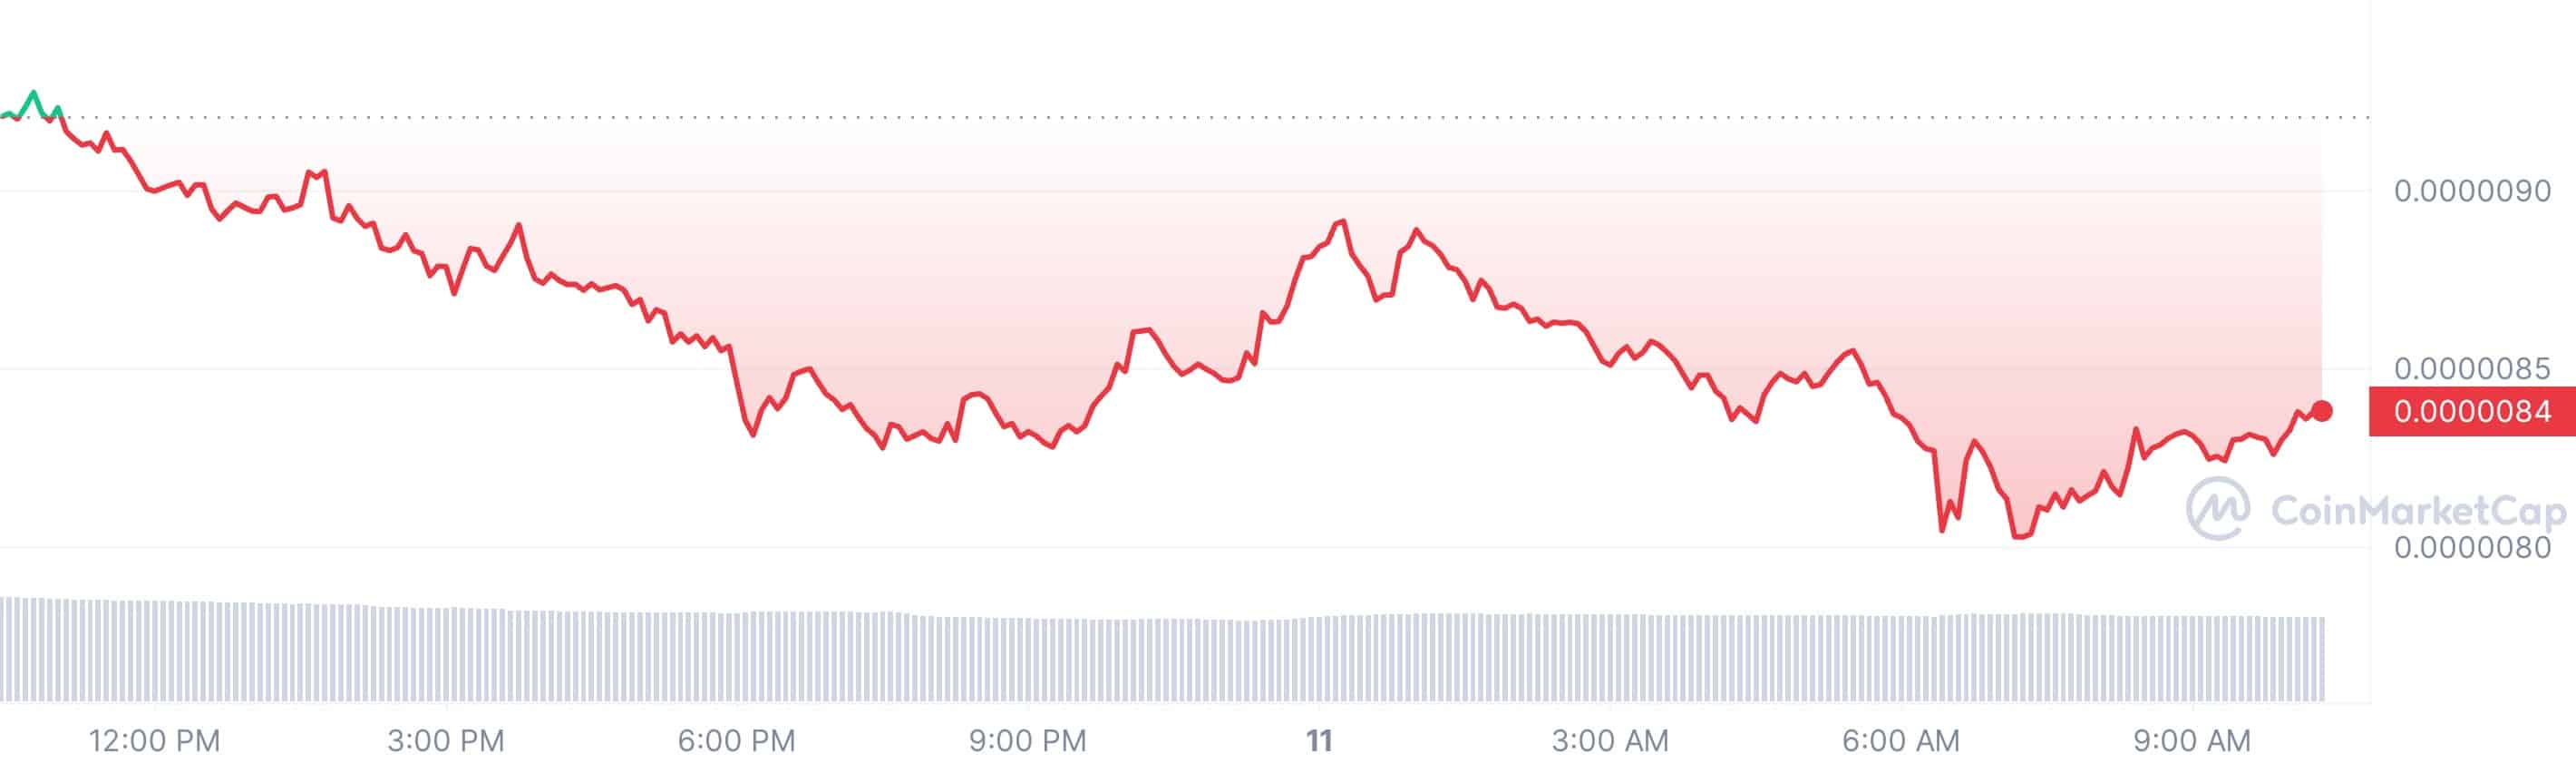 Цены на криптовалюту сегодня, 11 марта: биткойн упал до 68 тысяч долларов, Ethereum — до 3800 долларов, падение SOL, XRP, PEPE